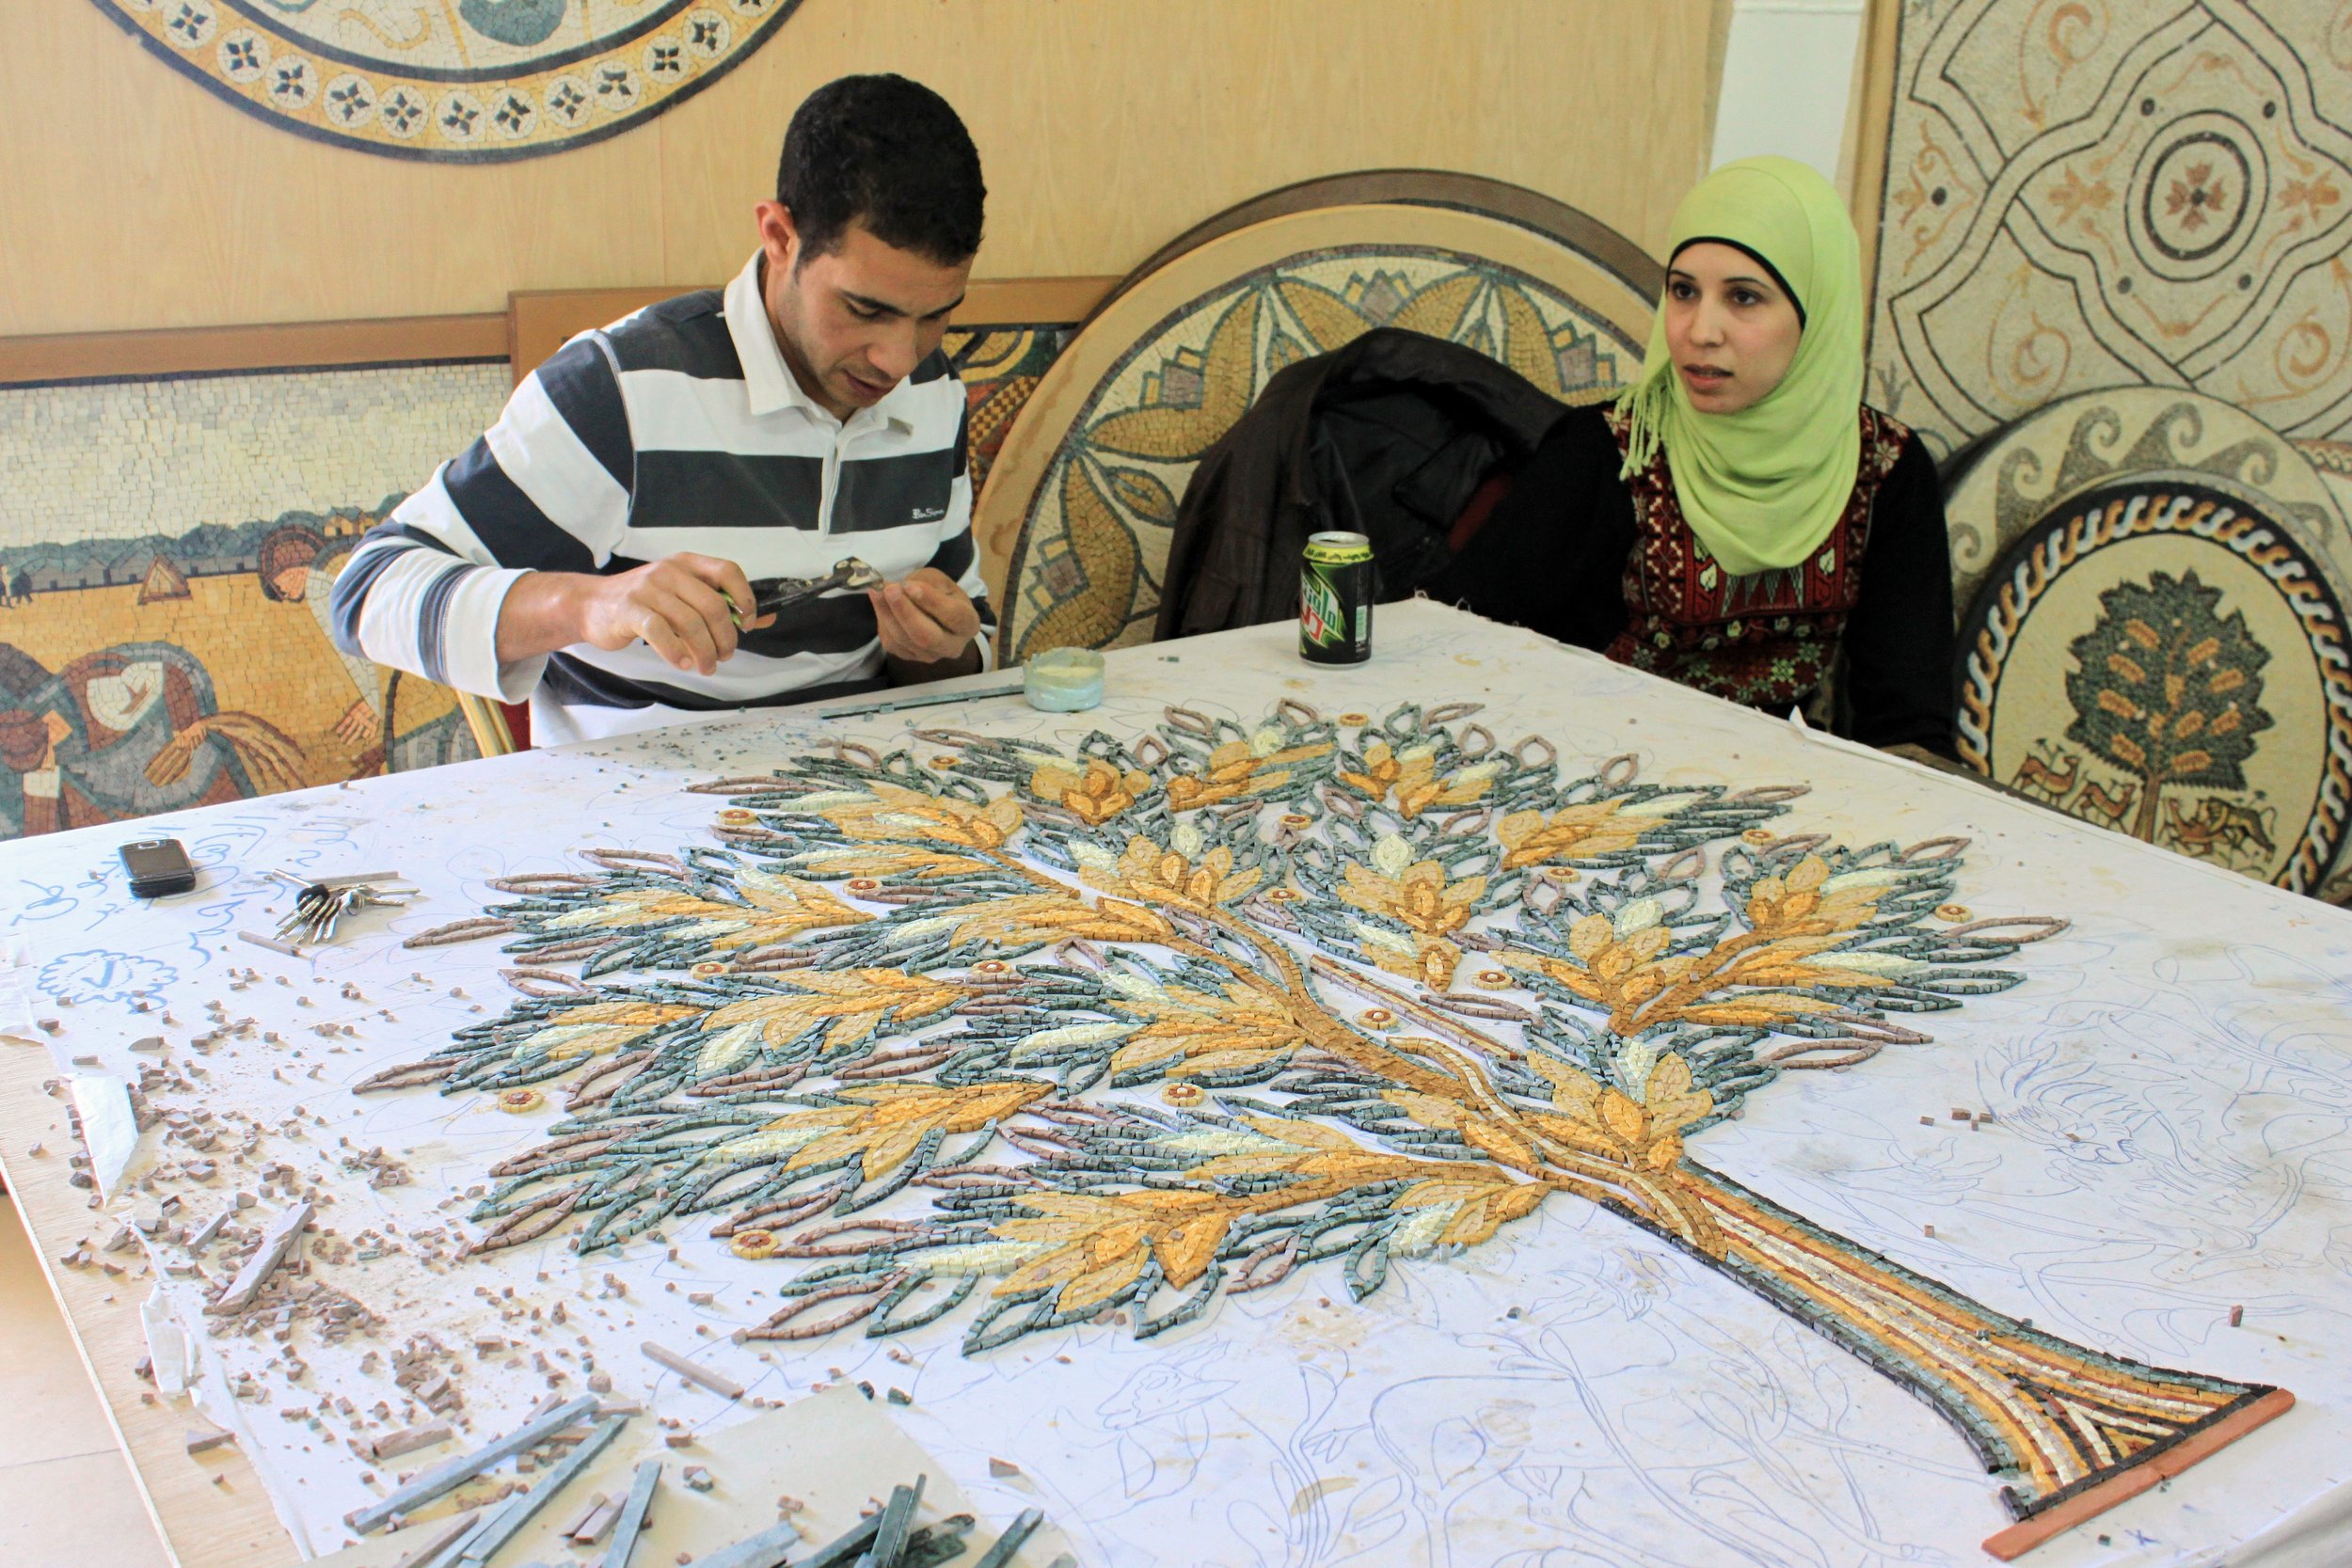 A man and woman working at a mosaic shop in Madaba, Jordan